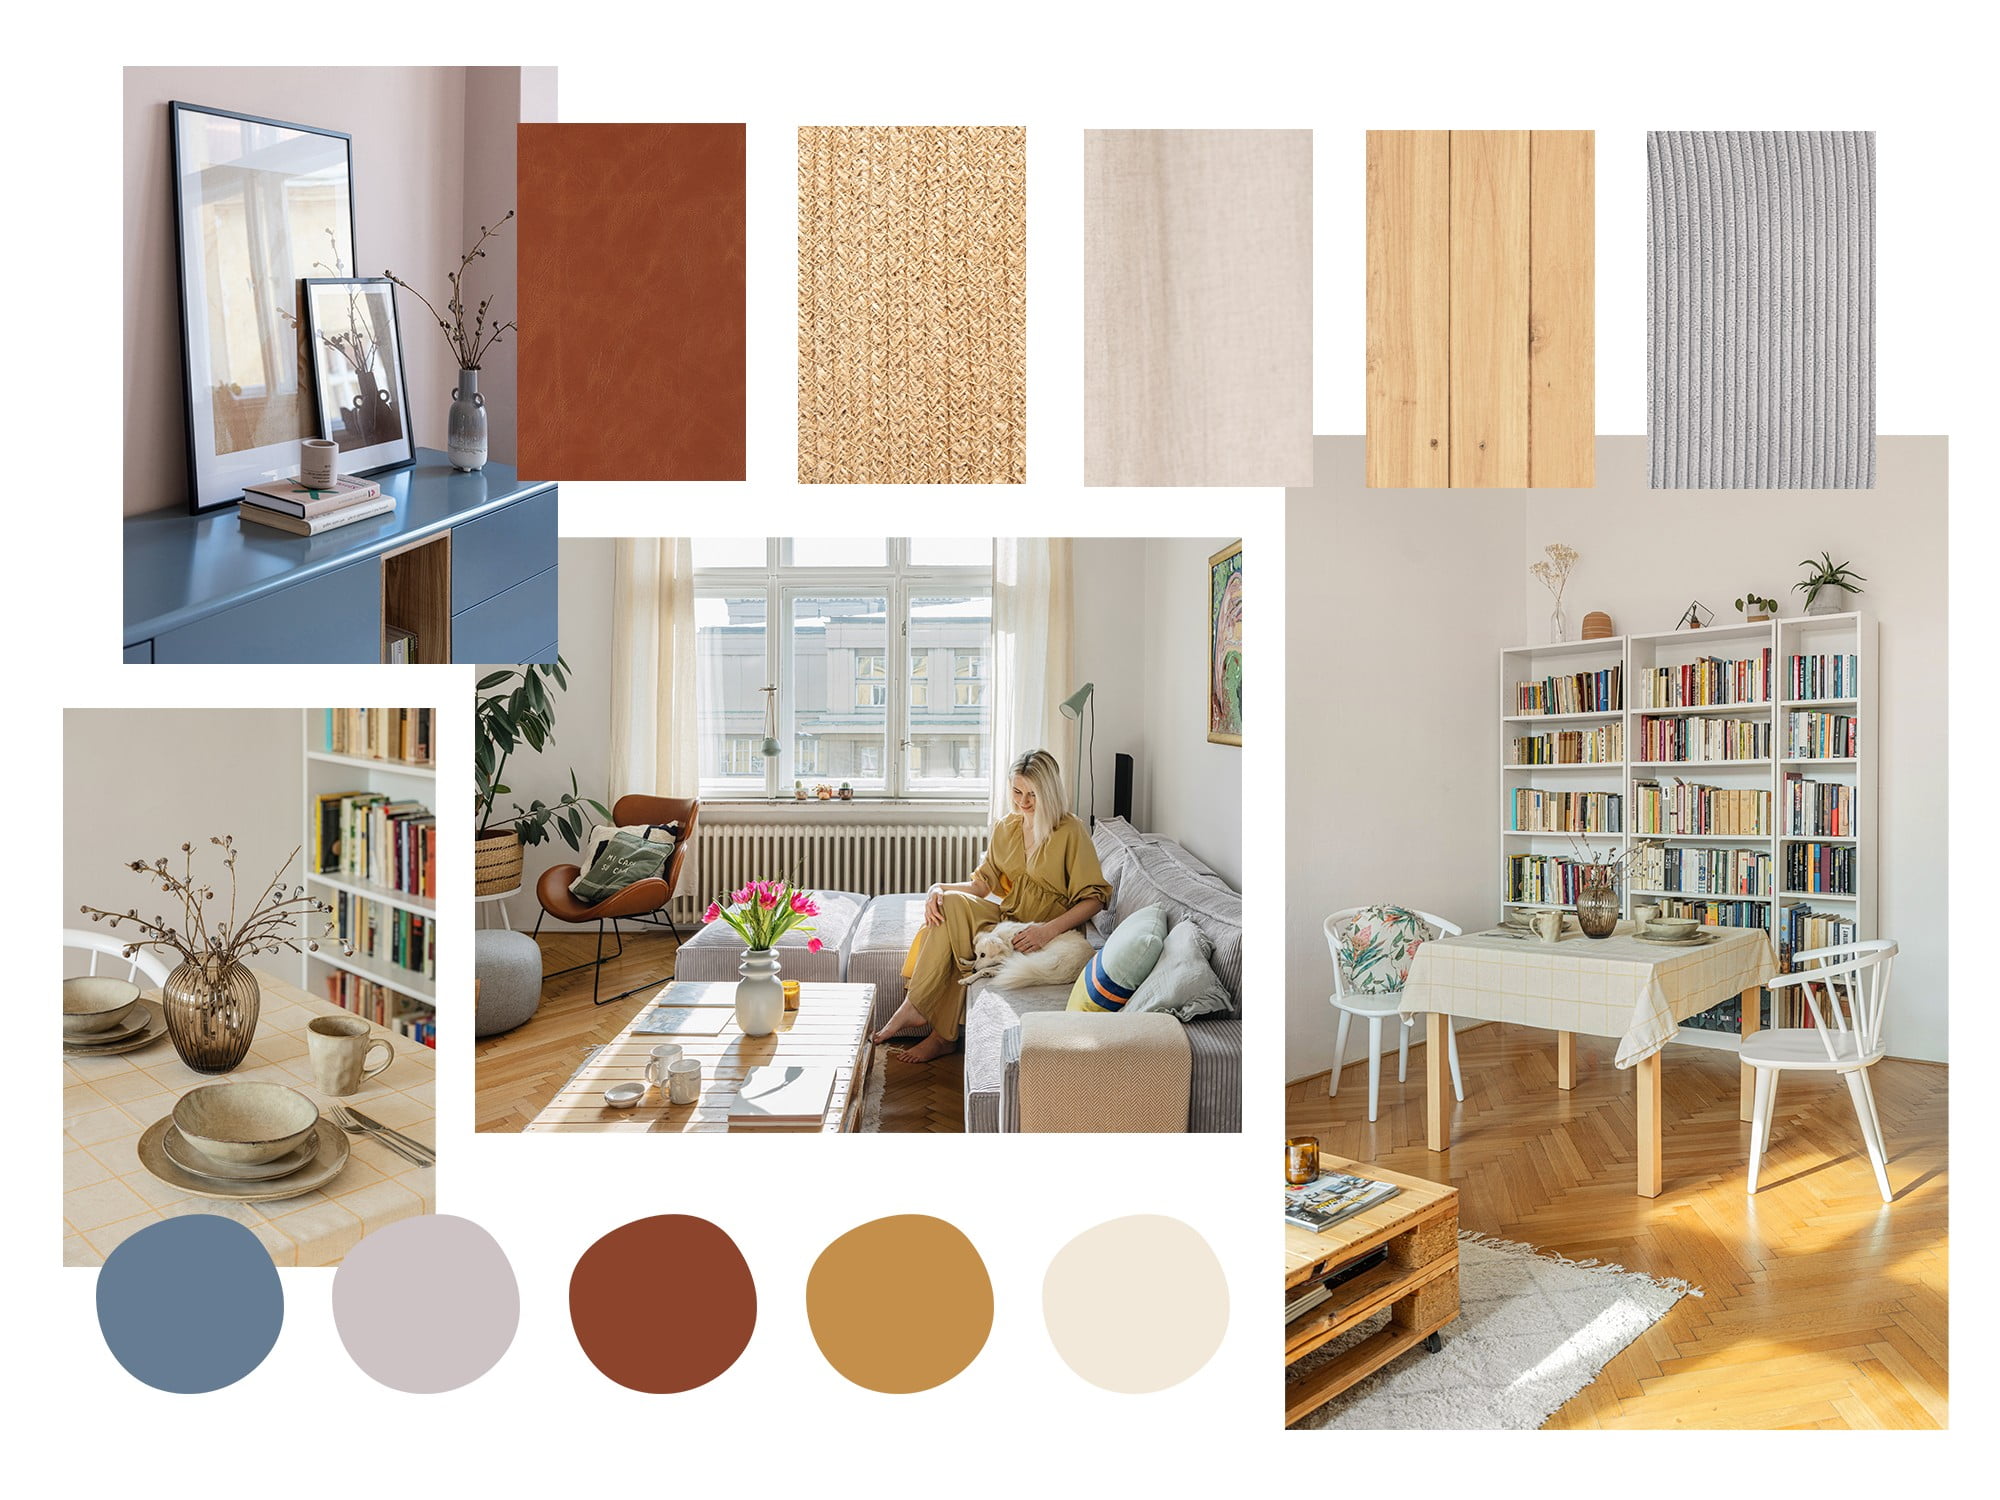 Combinație de culori și materiale în interiorul apartamentului lui Klara.